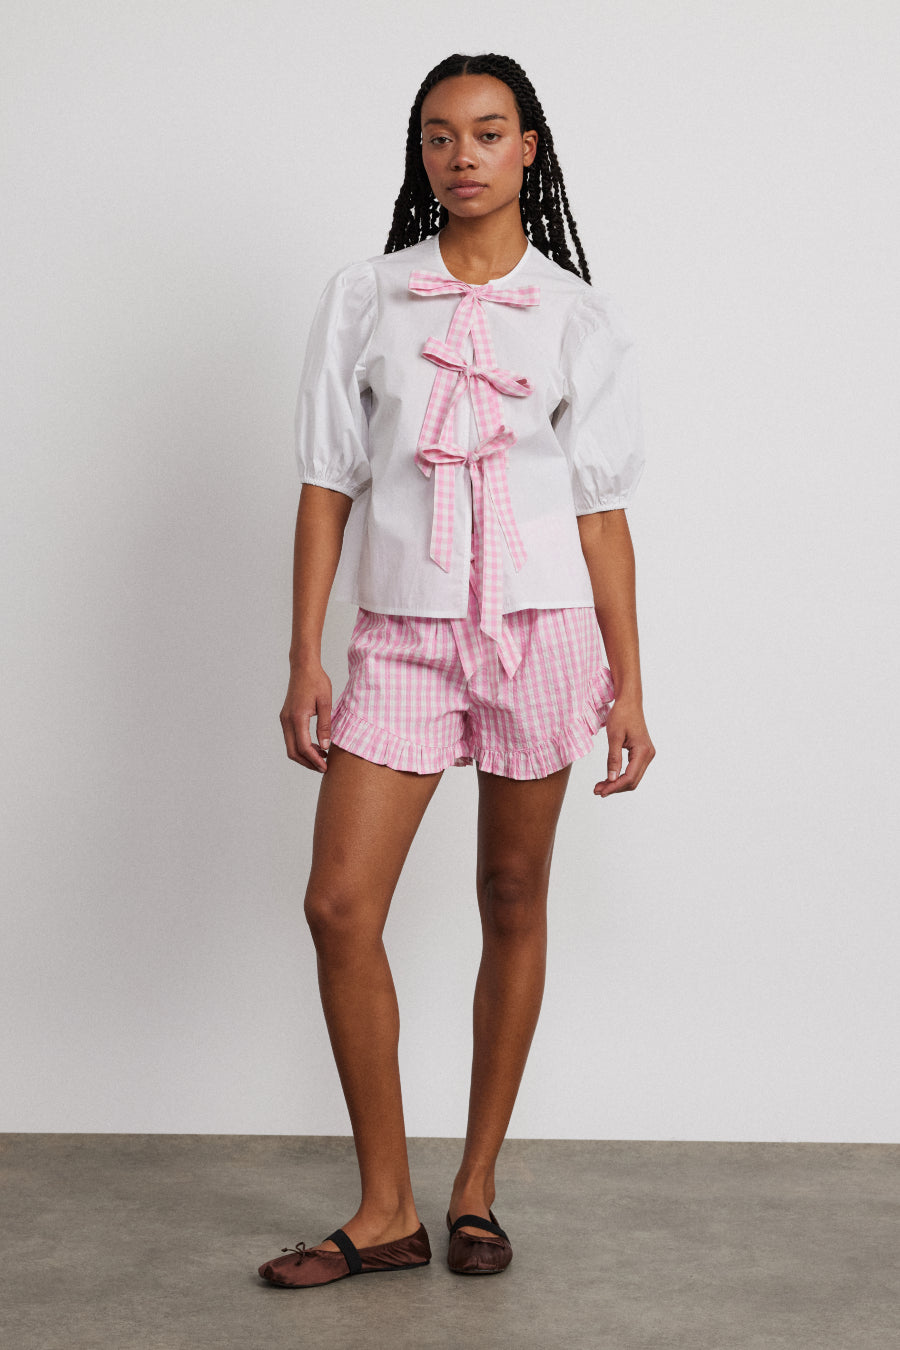 paddy bloomer nightwear set- pink gingham